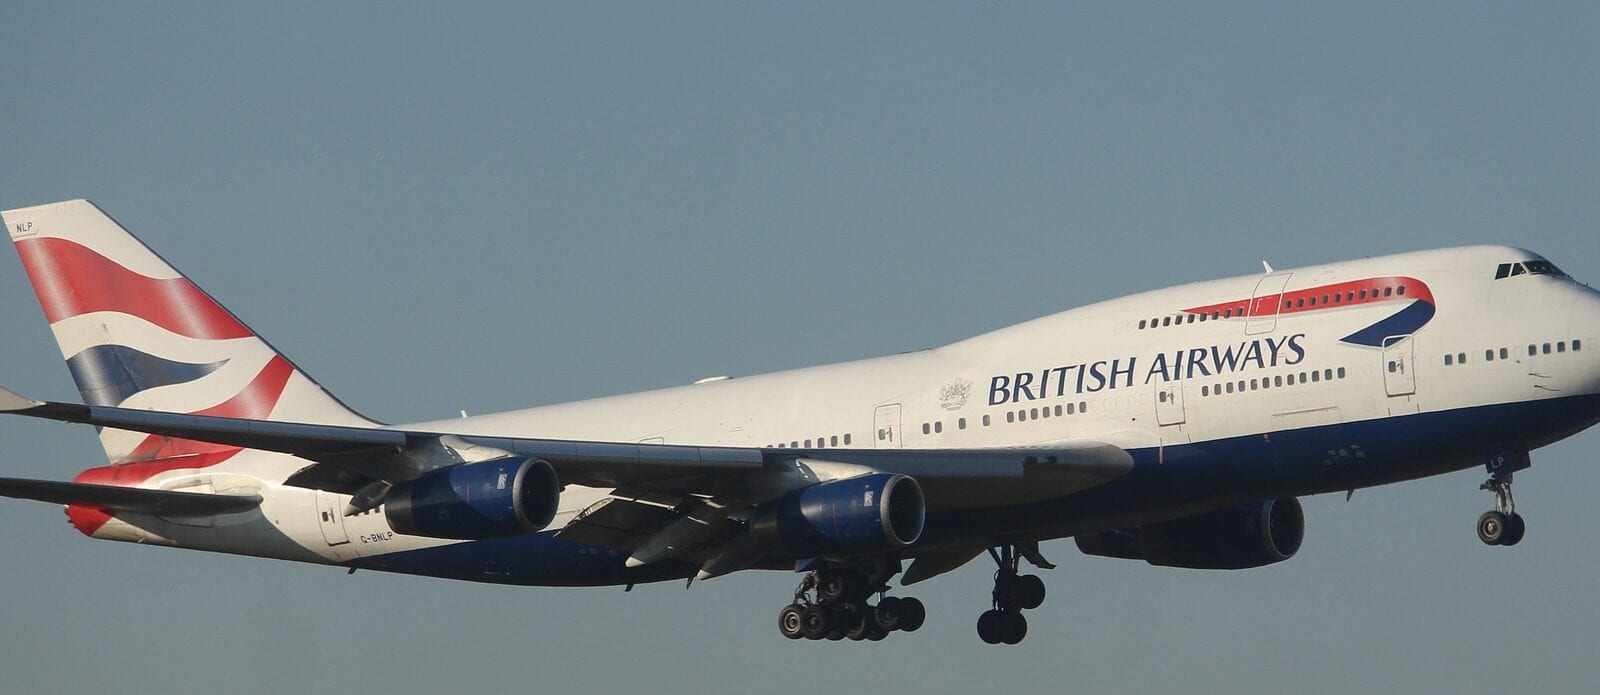 British Airways Flight